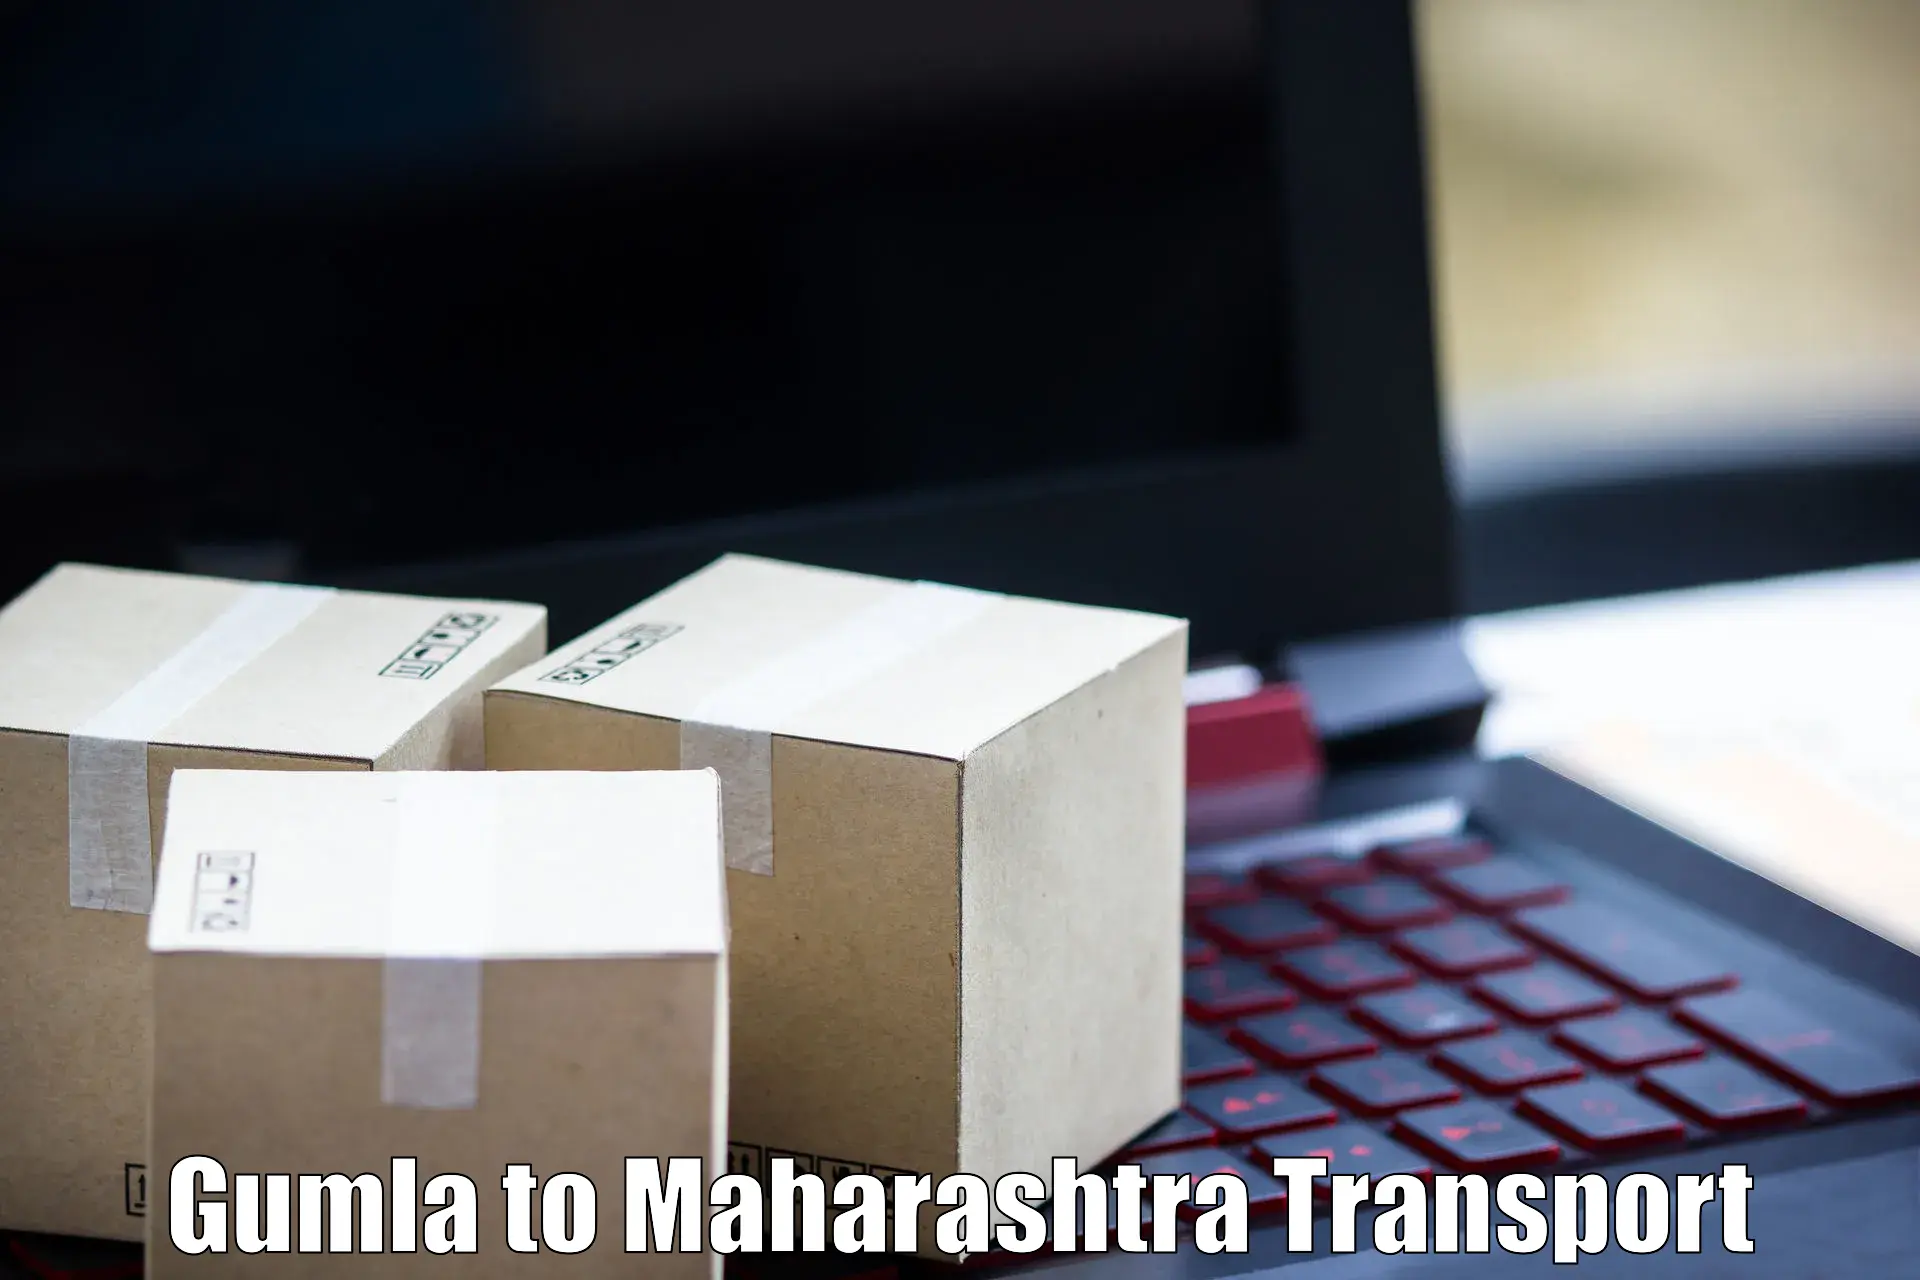 Road transport online services Gumla to Chopda